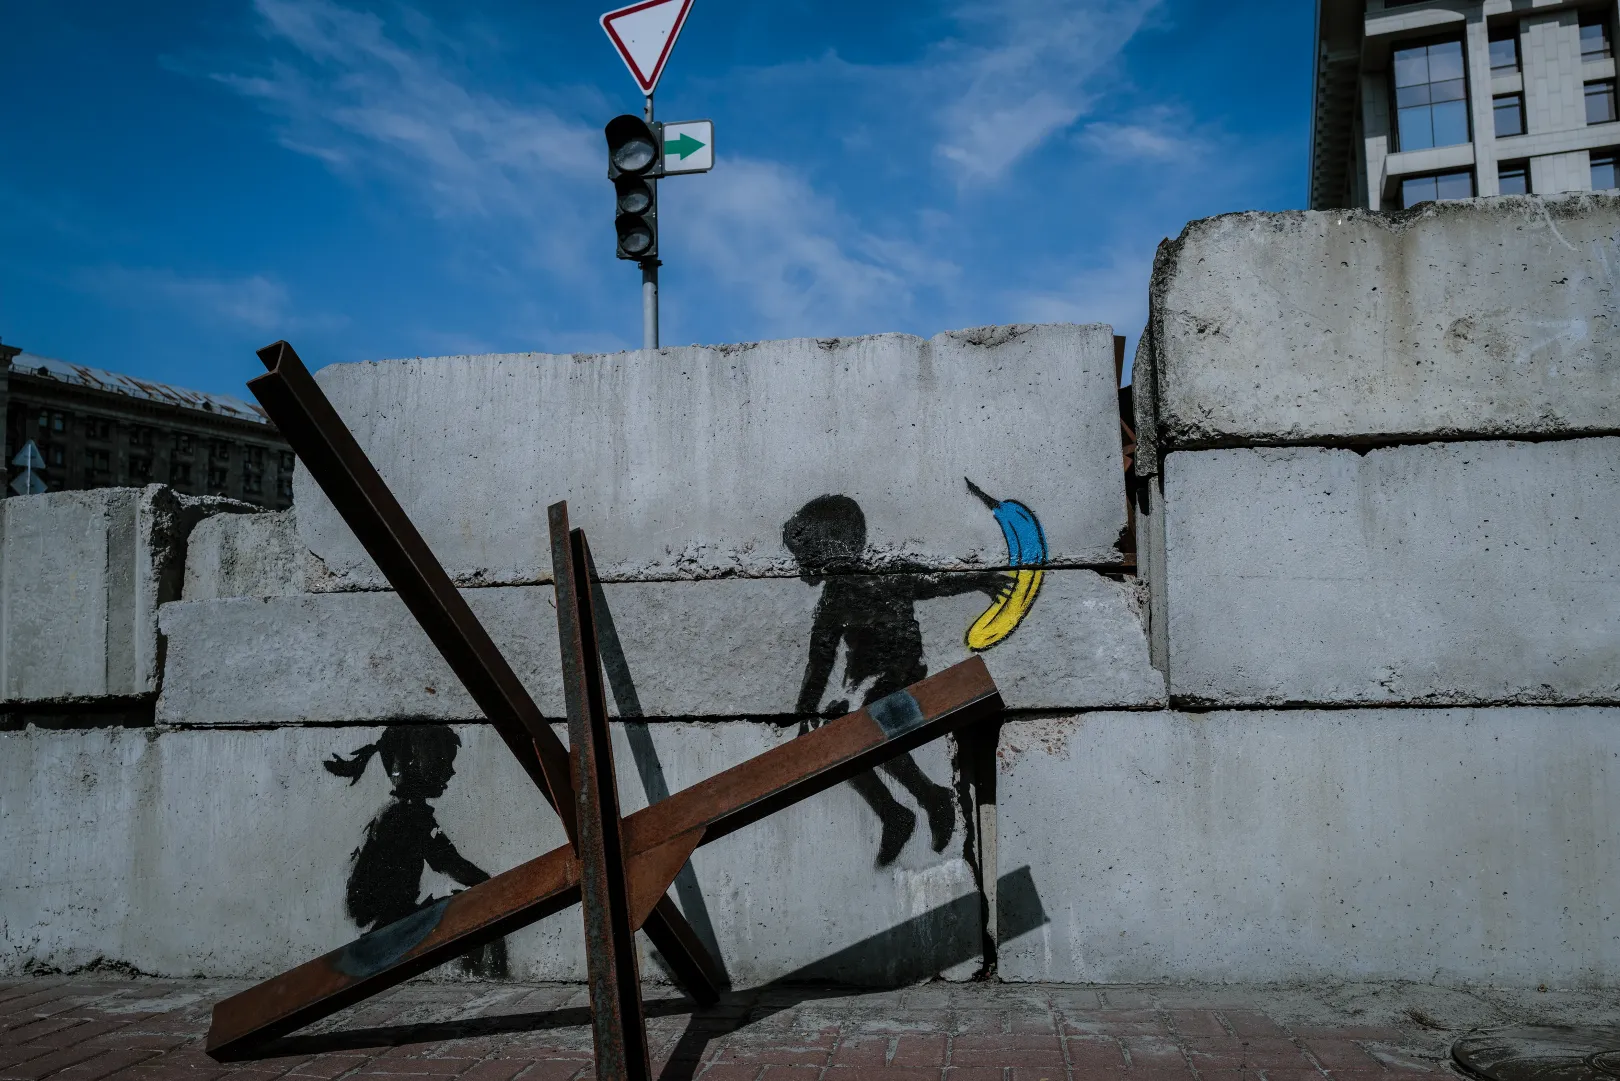 Banksynek tulajdonított kijevi graffiti egy libikókává tett tankcsapdával a kijevi Majdanon – Fotó: Huszti István / Telex